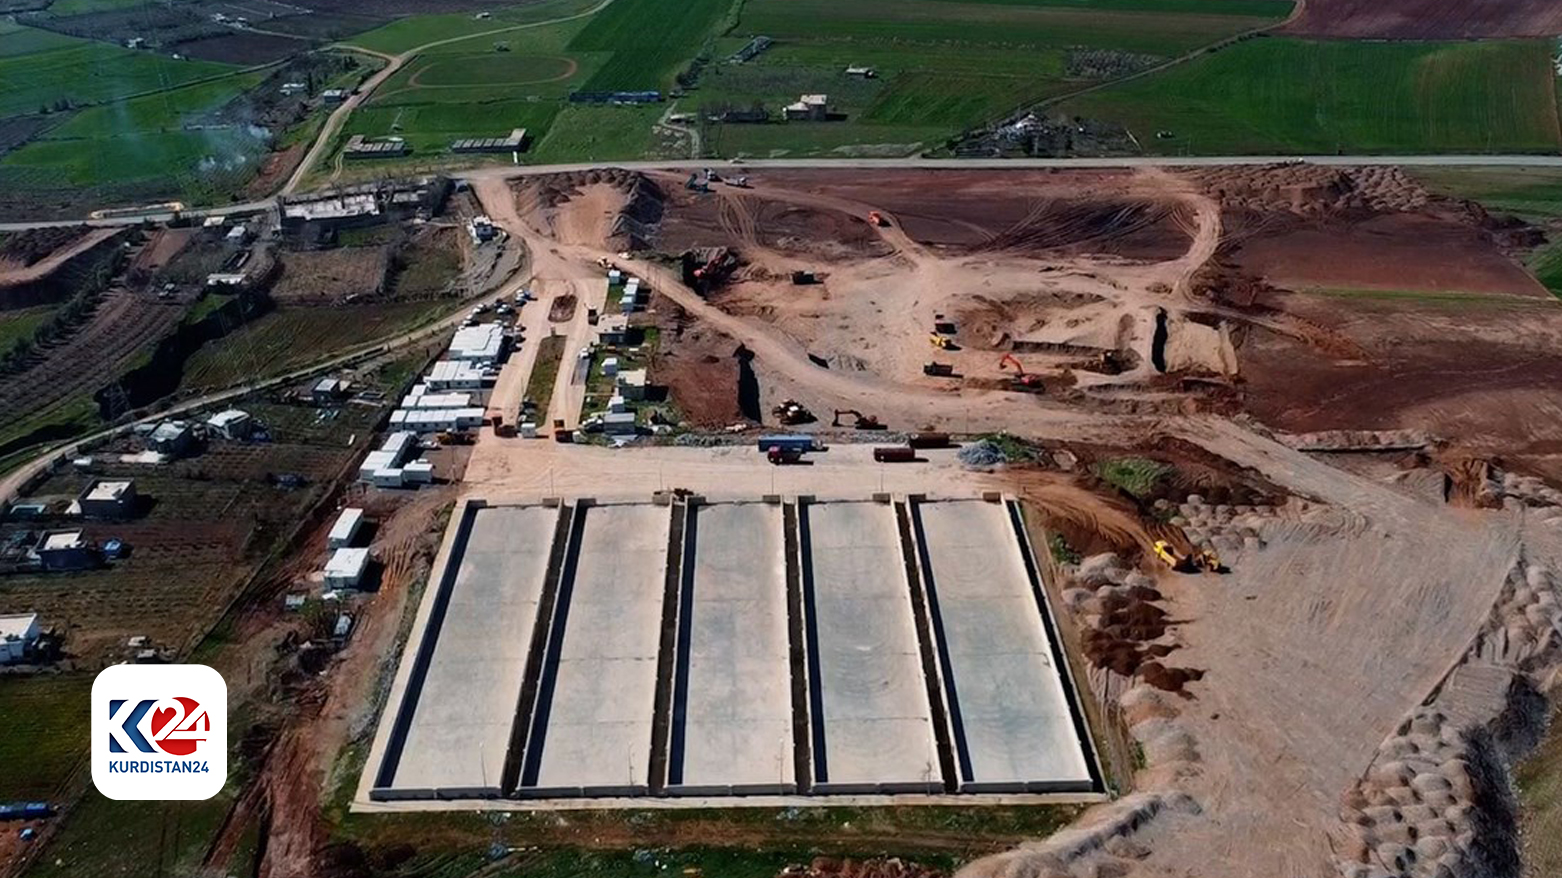 إنشاء صومعة في حلبجة بقدرة تخزينية تقدر بـ 40 ألف طن من القمح